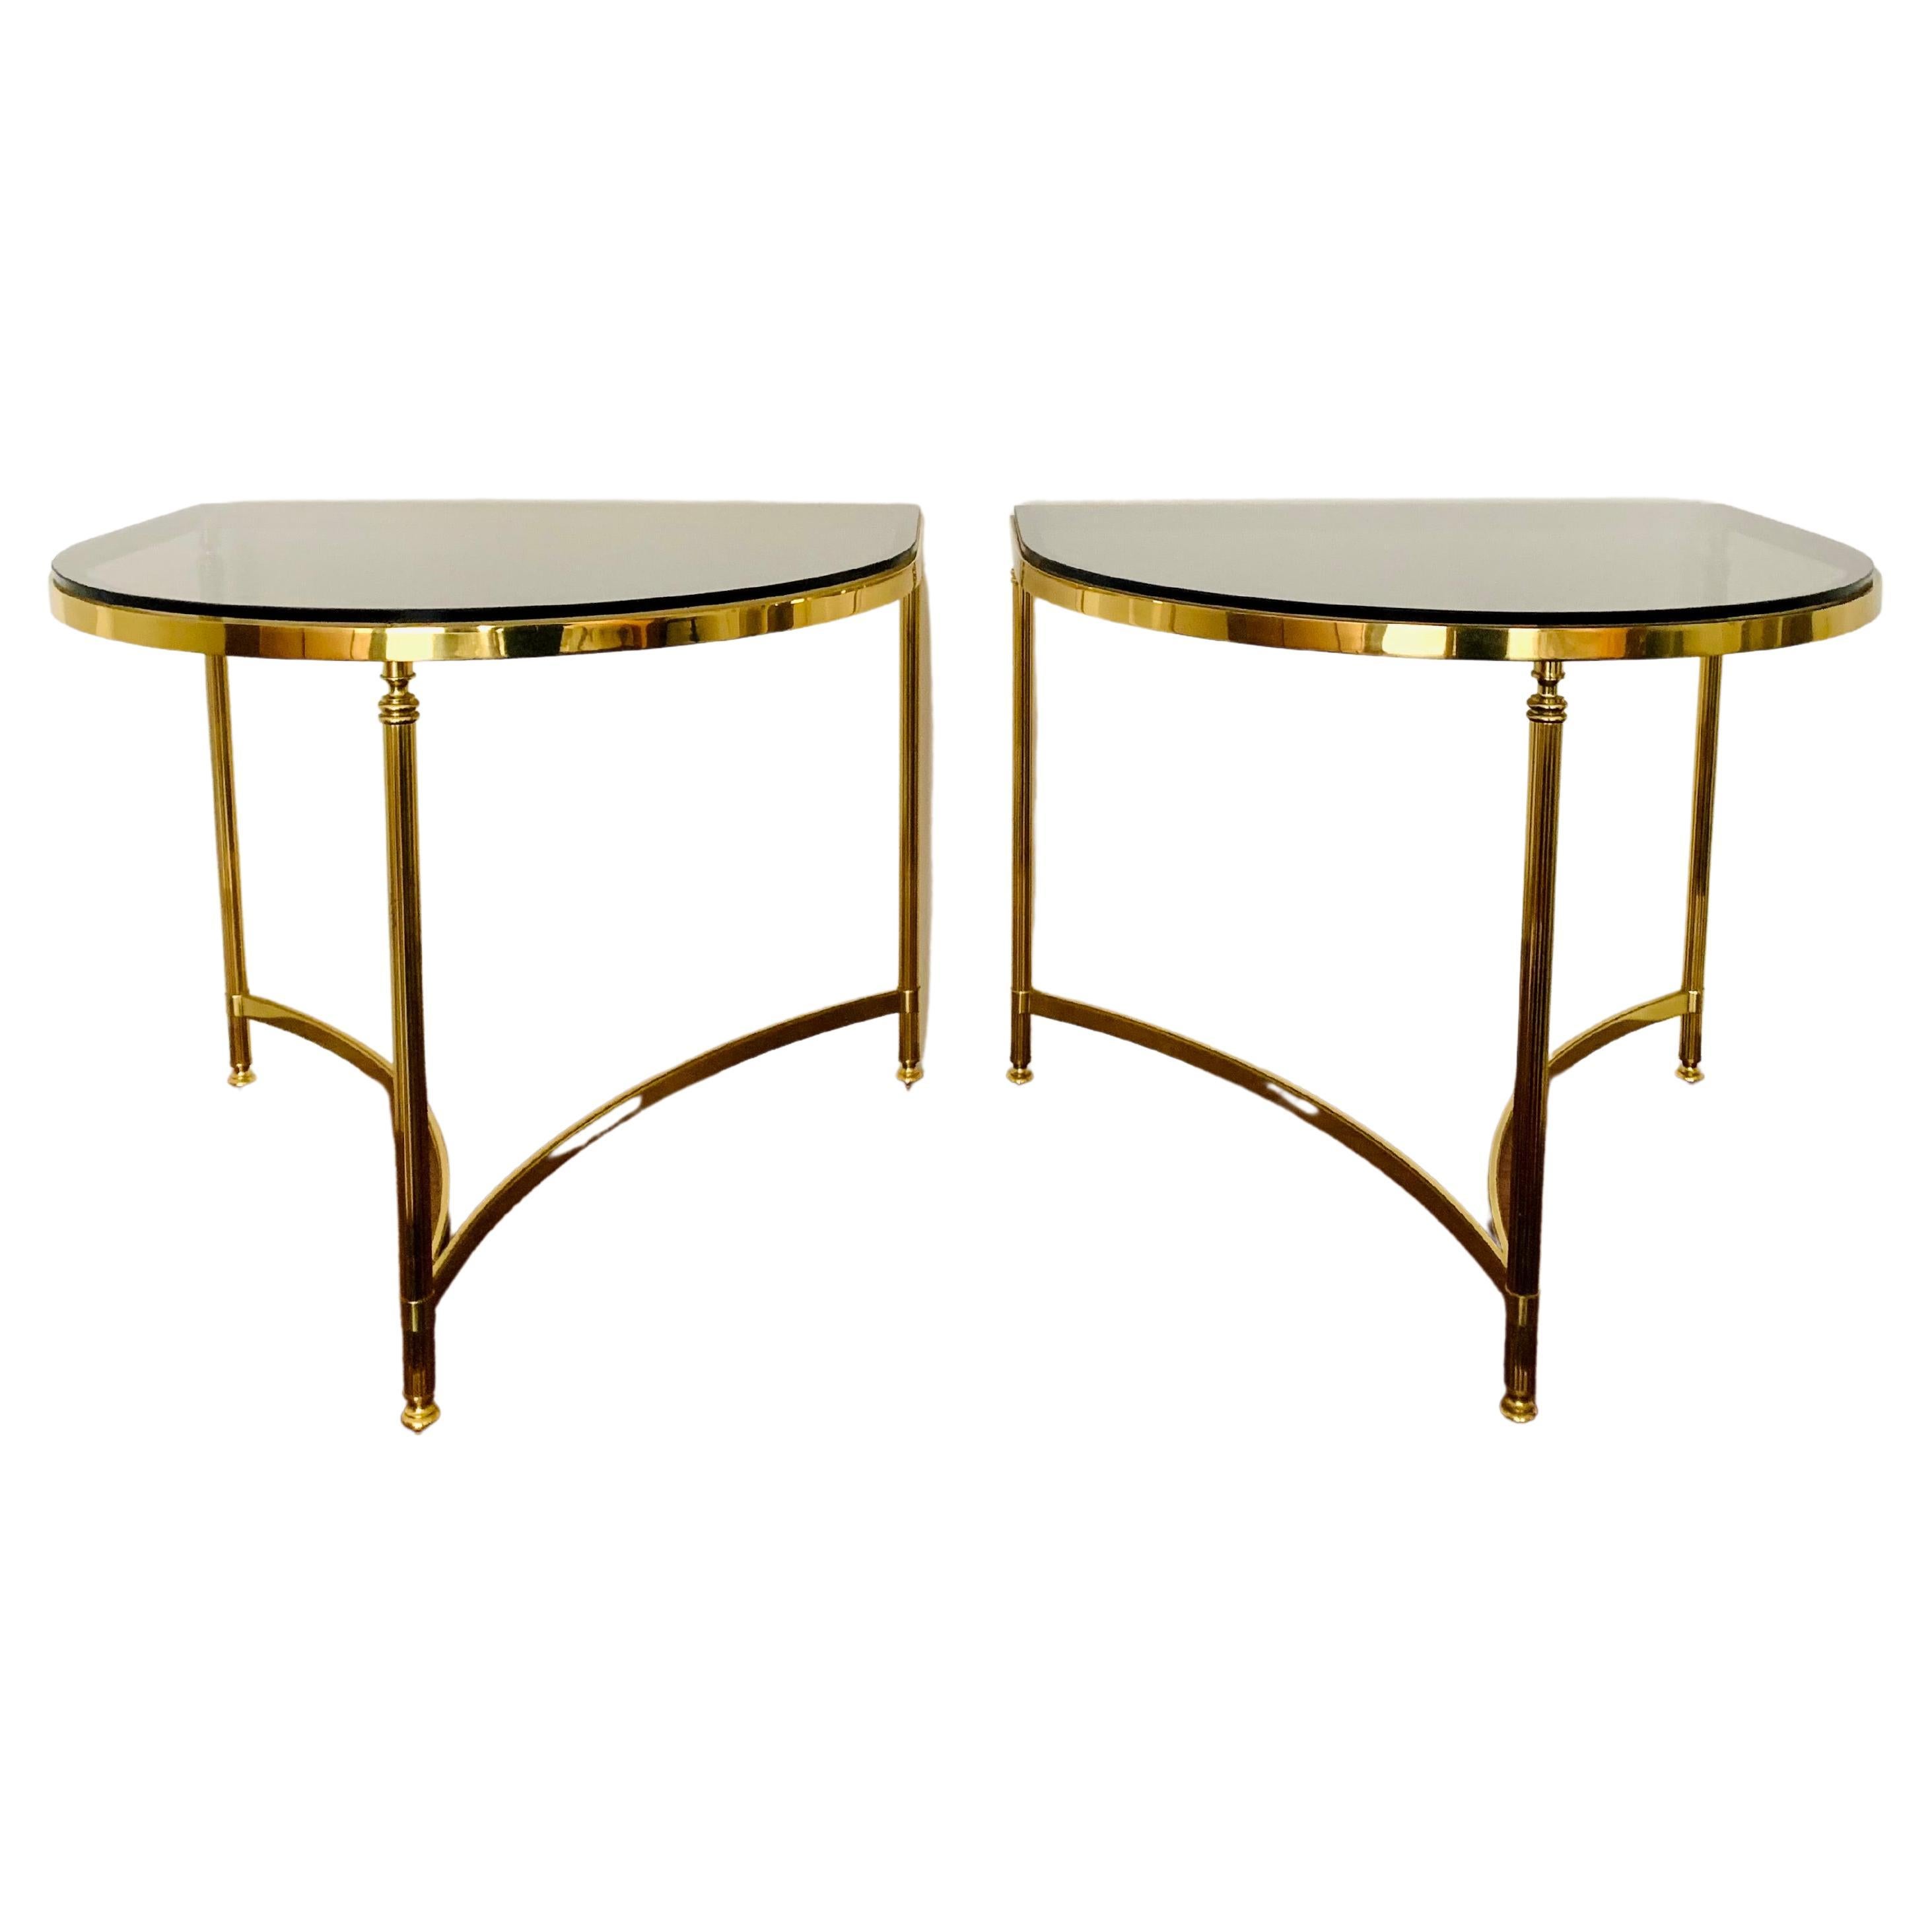 Set of 2 Mid-Century Modern Side Tables by Vereinigte Werkstätten München